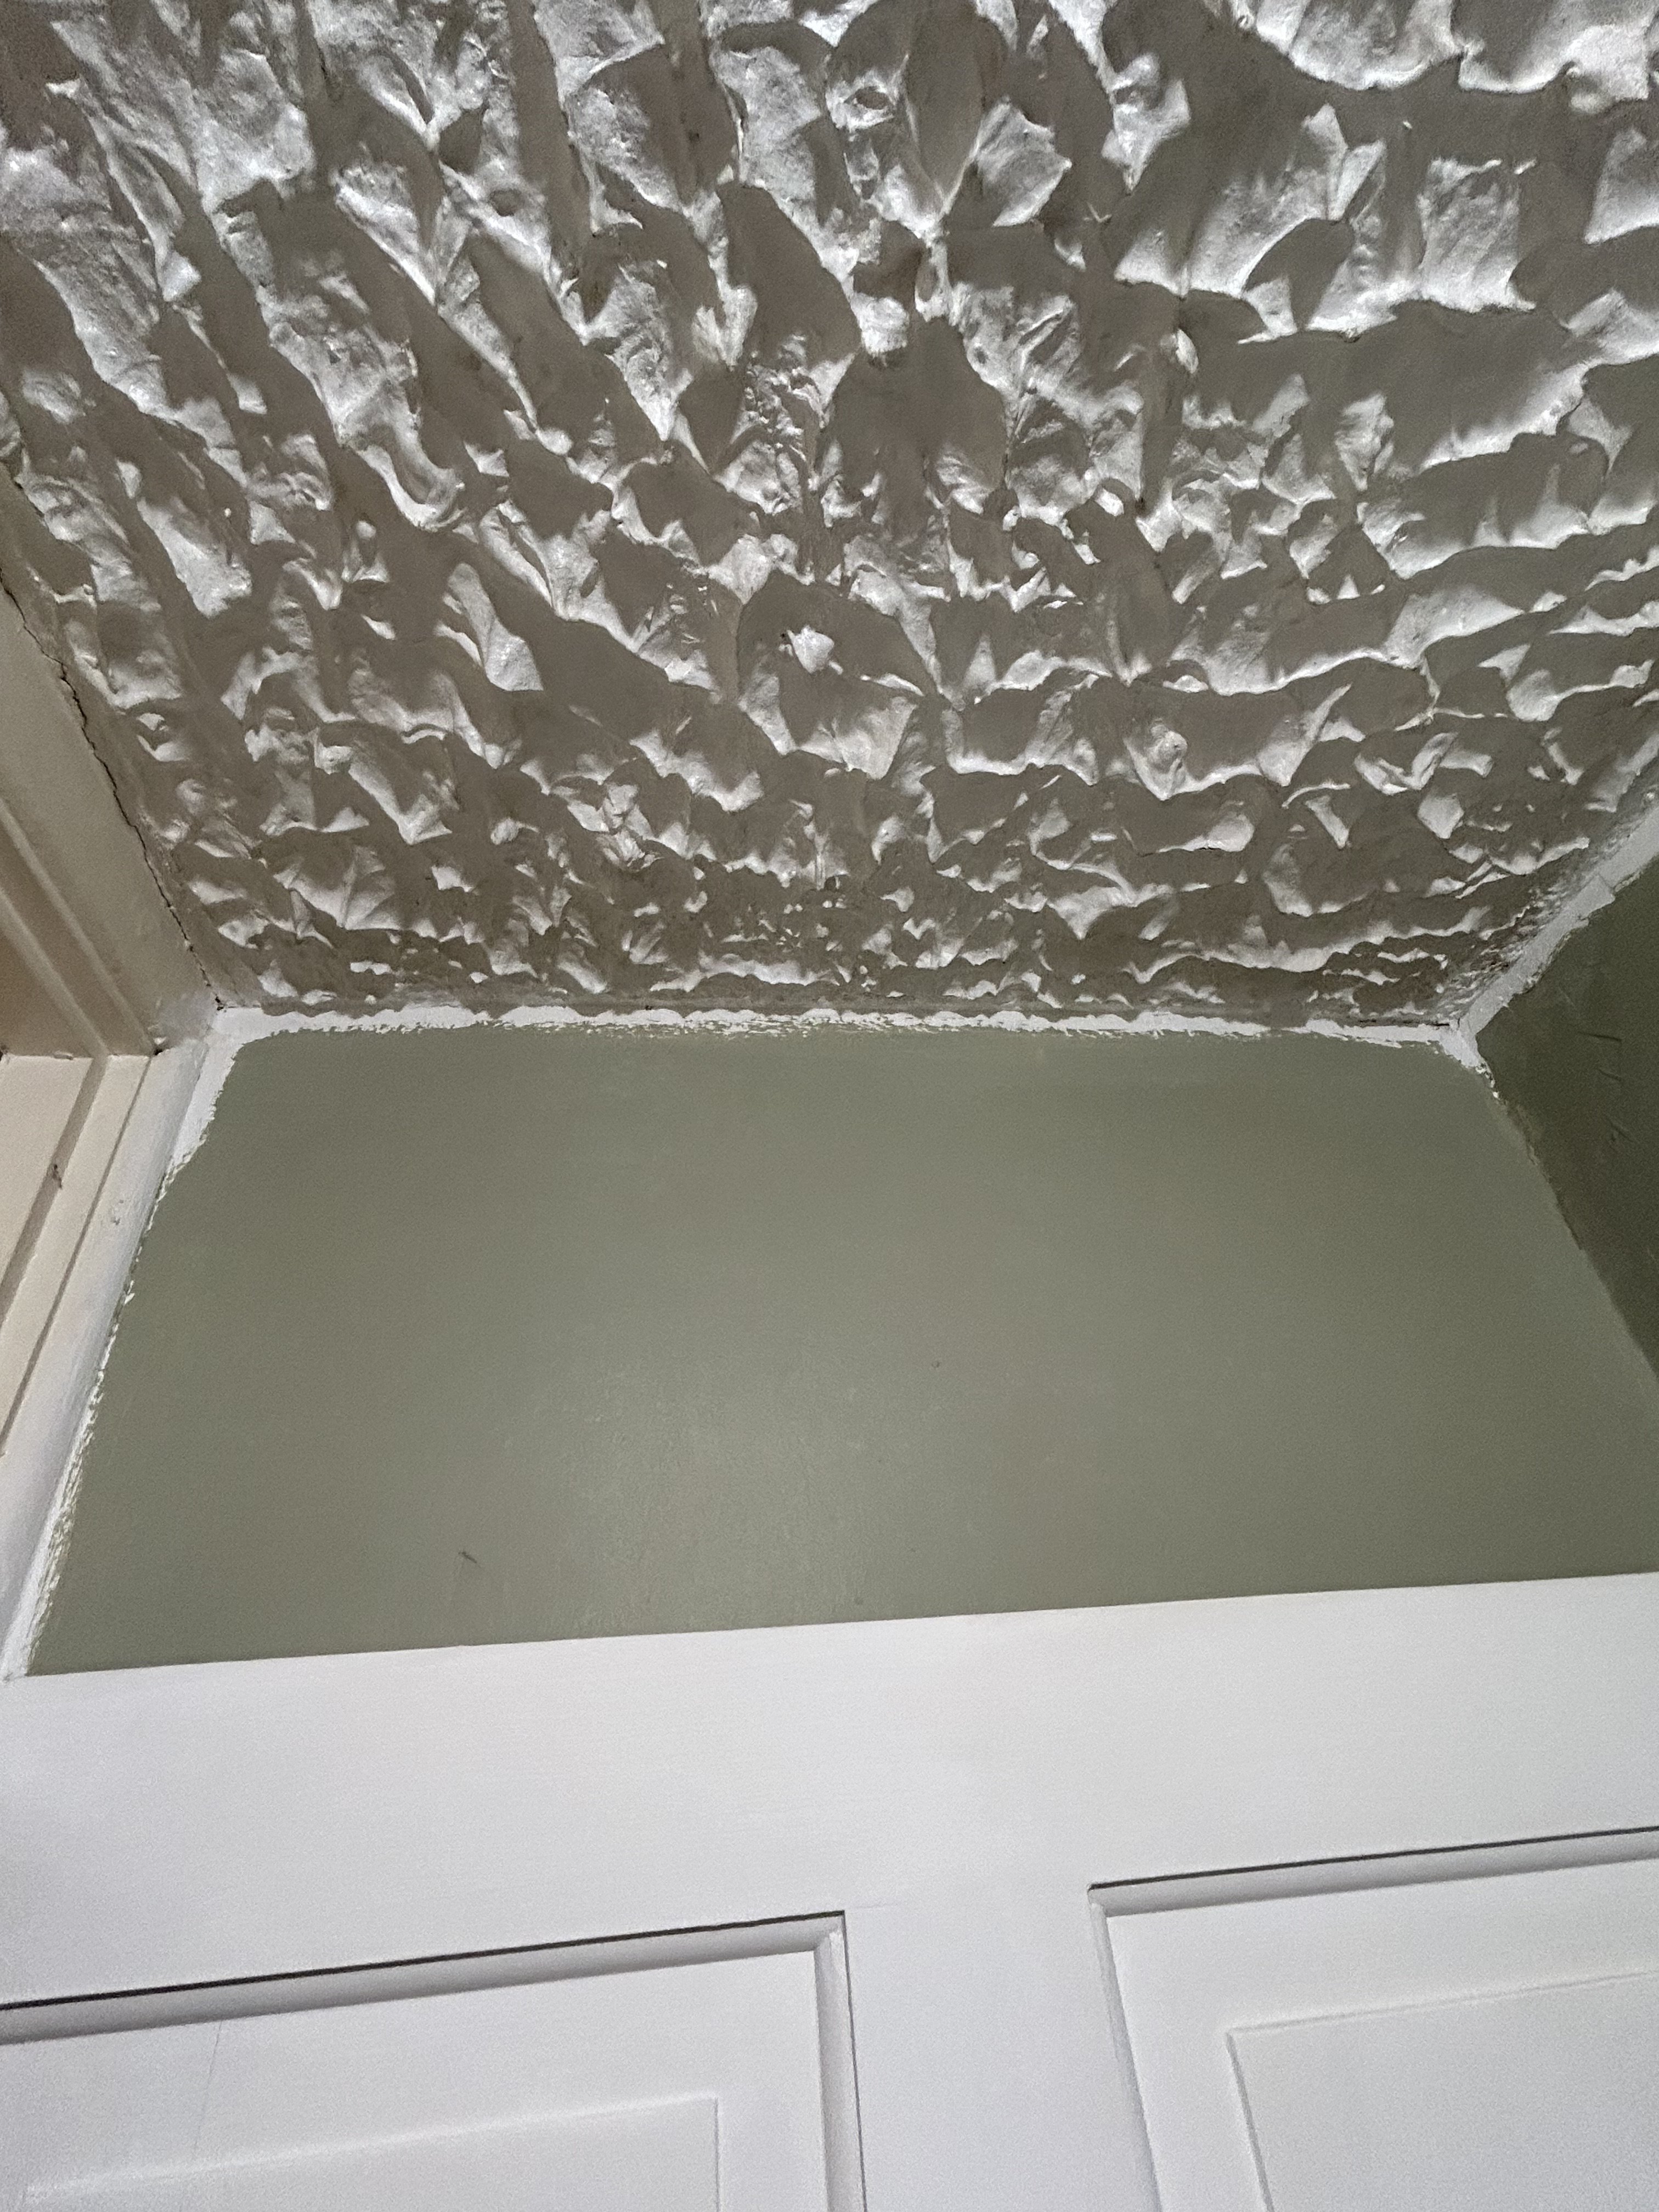 Ceiling help please?